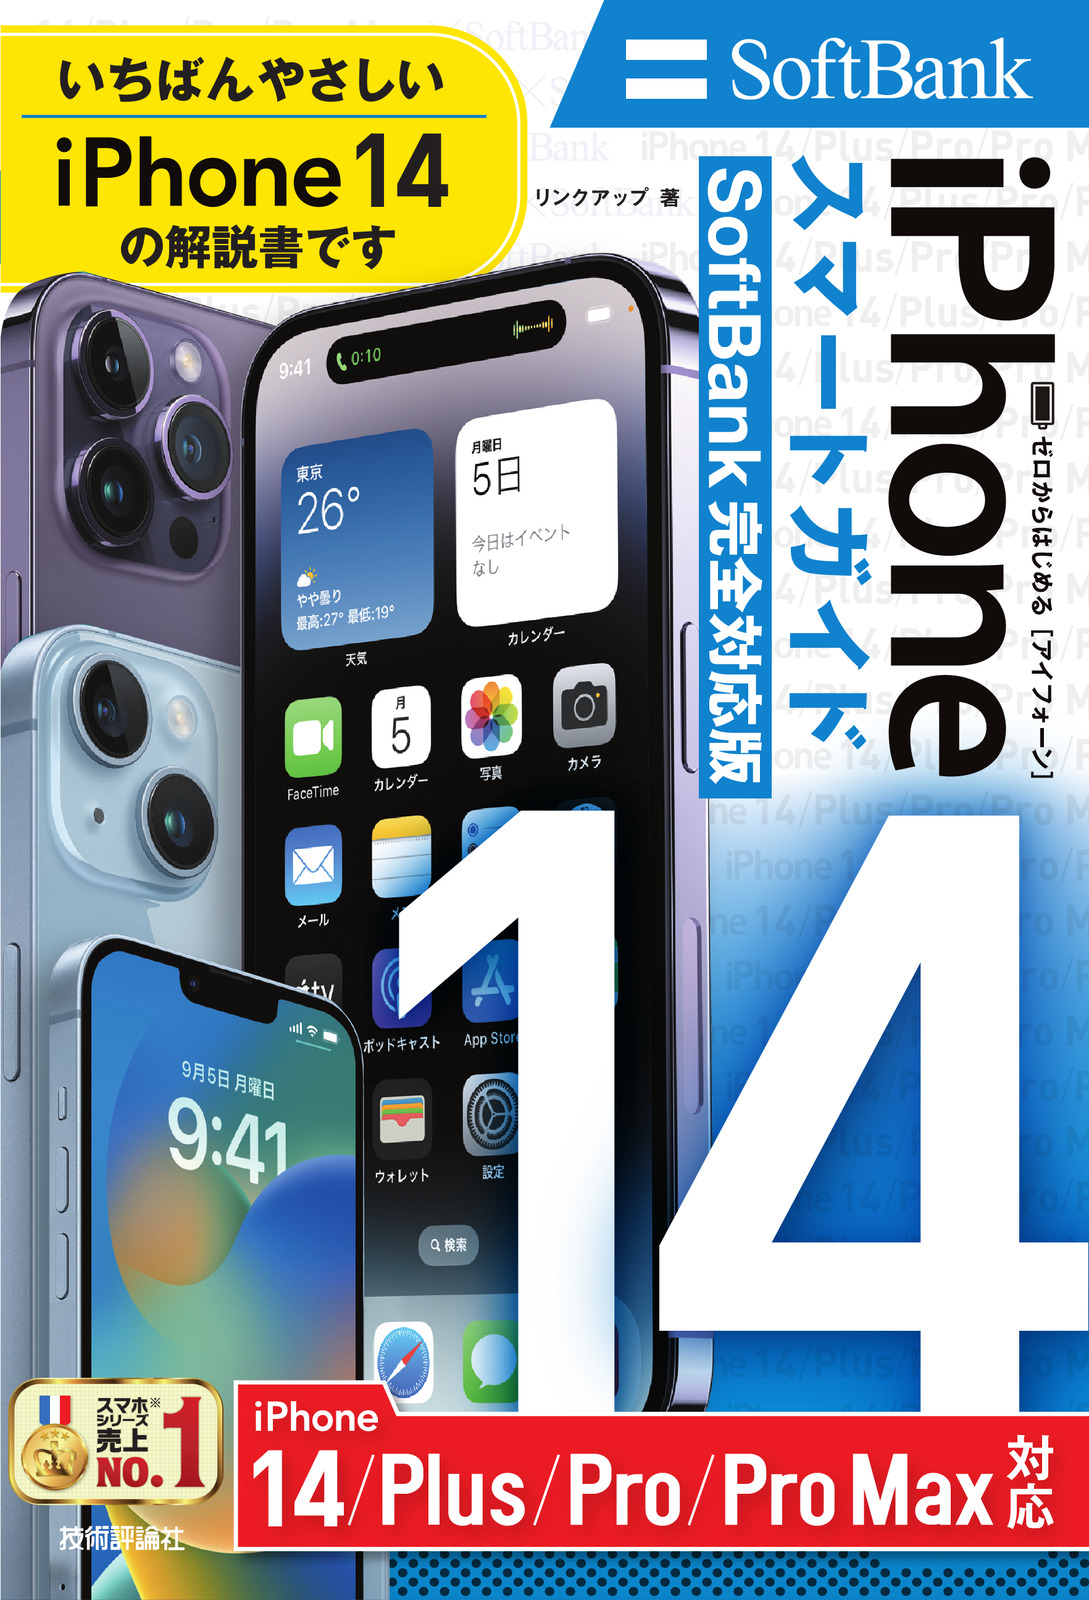 ゼロからはじめる iPhone 14/Plus/Pro/Pro Max スマートガイド SoftBank完全対応版